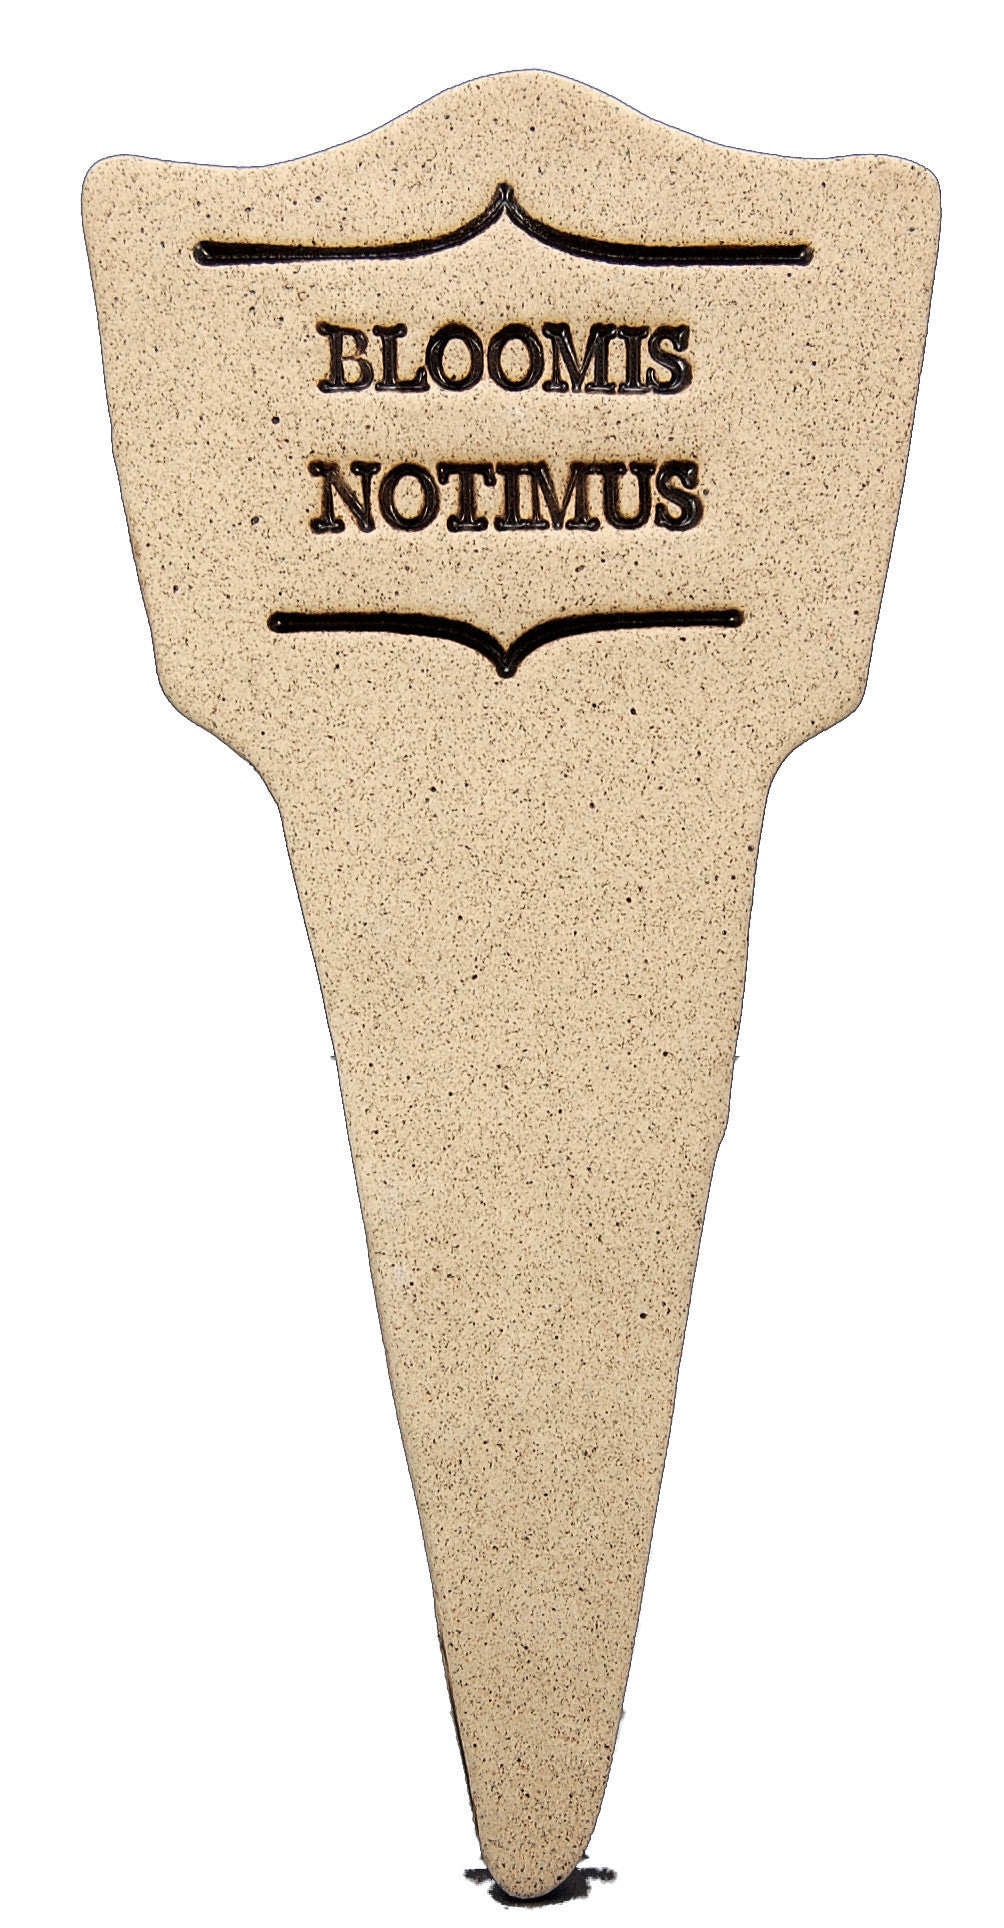 Bloomis Notimus - Amaranth Stoneware Canada